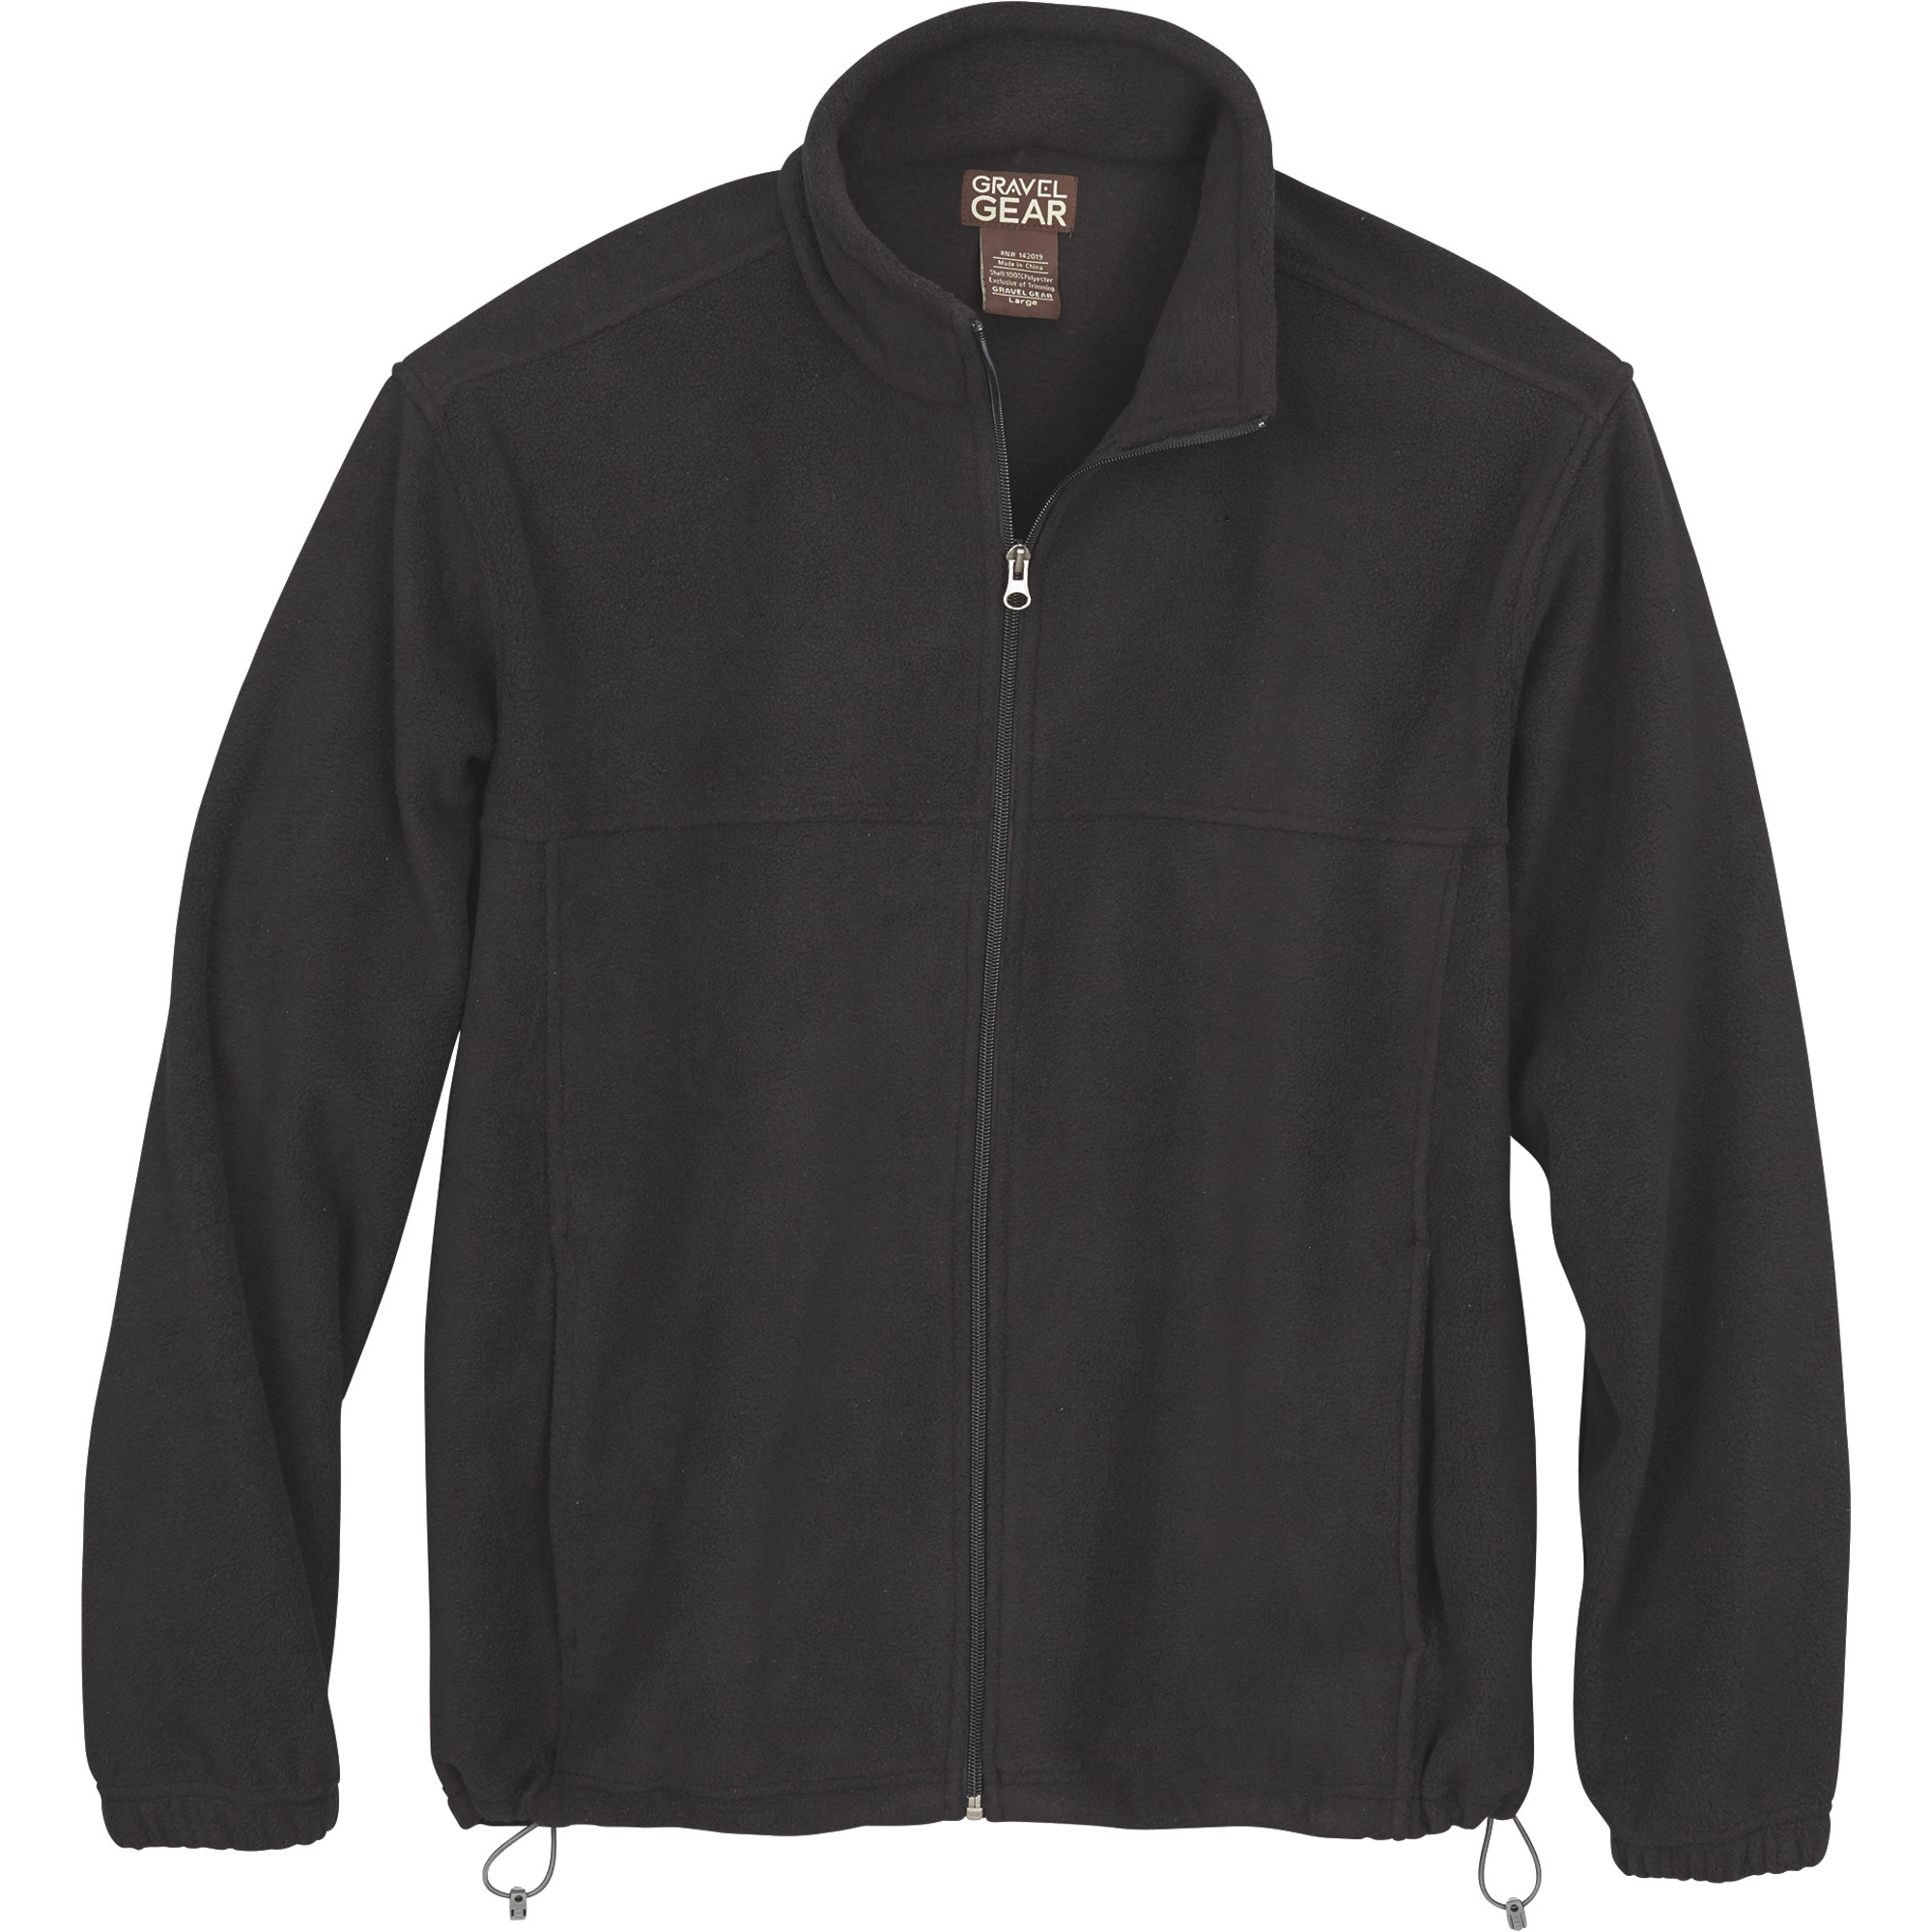 Gravel Gear Men's Zip-Up Fleece Jacket â Black, 2XL